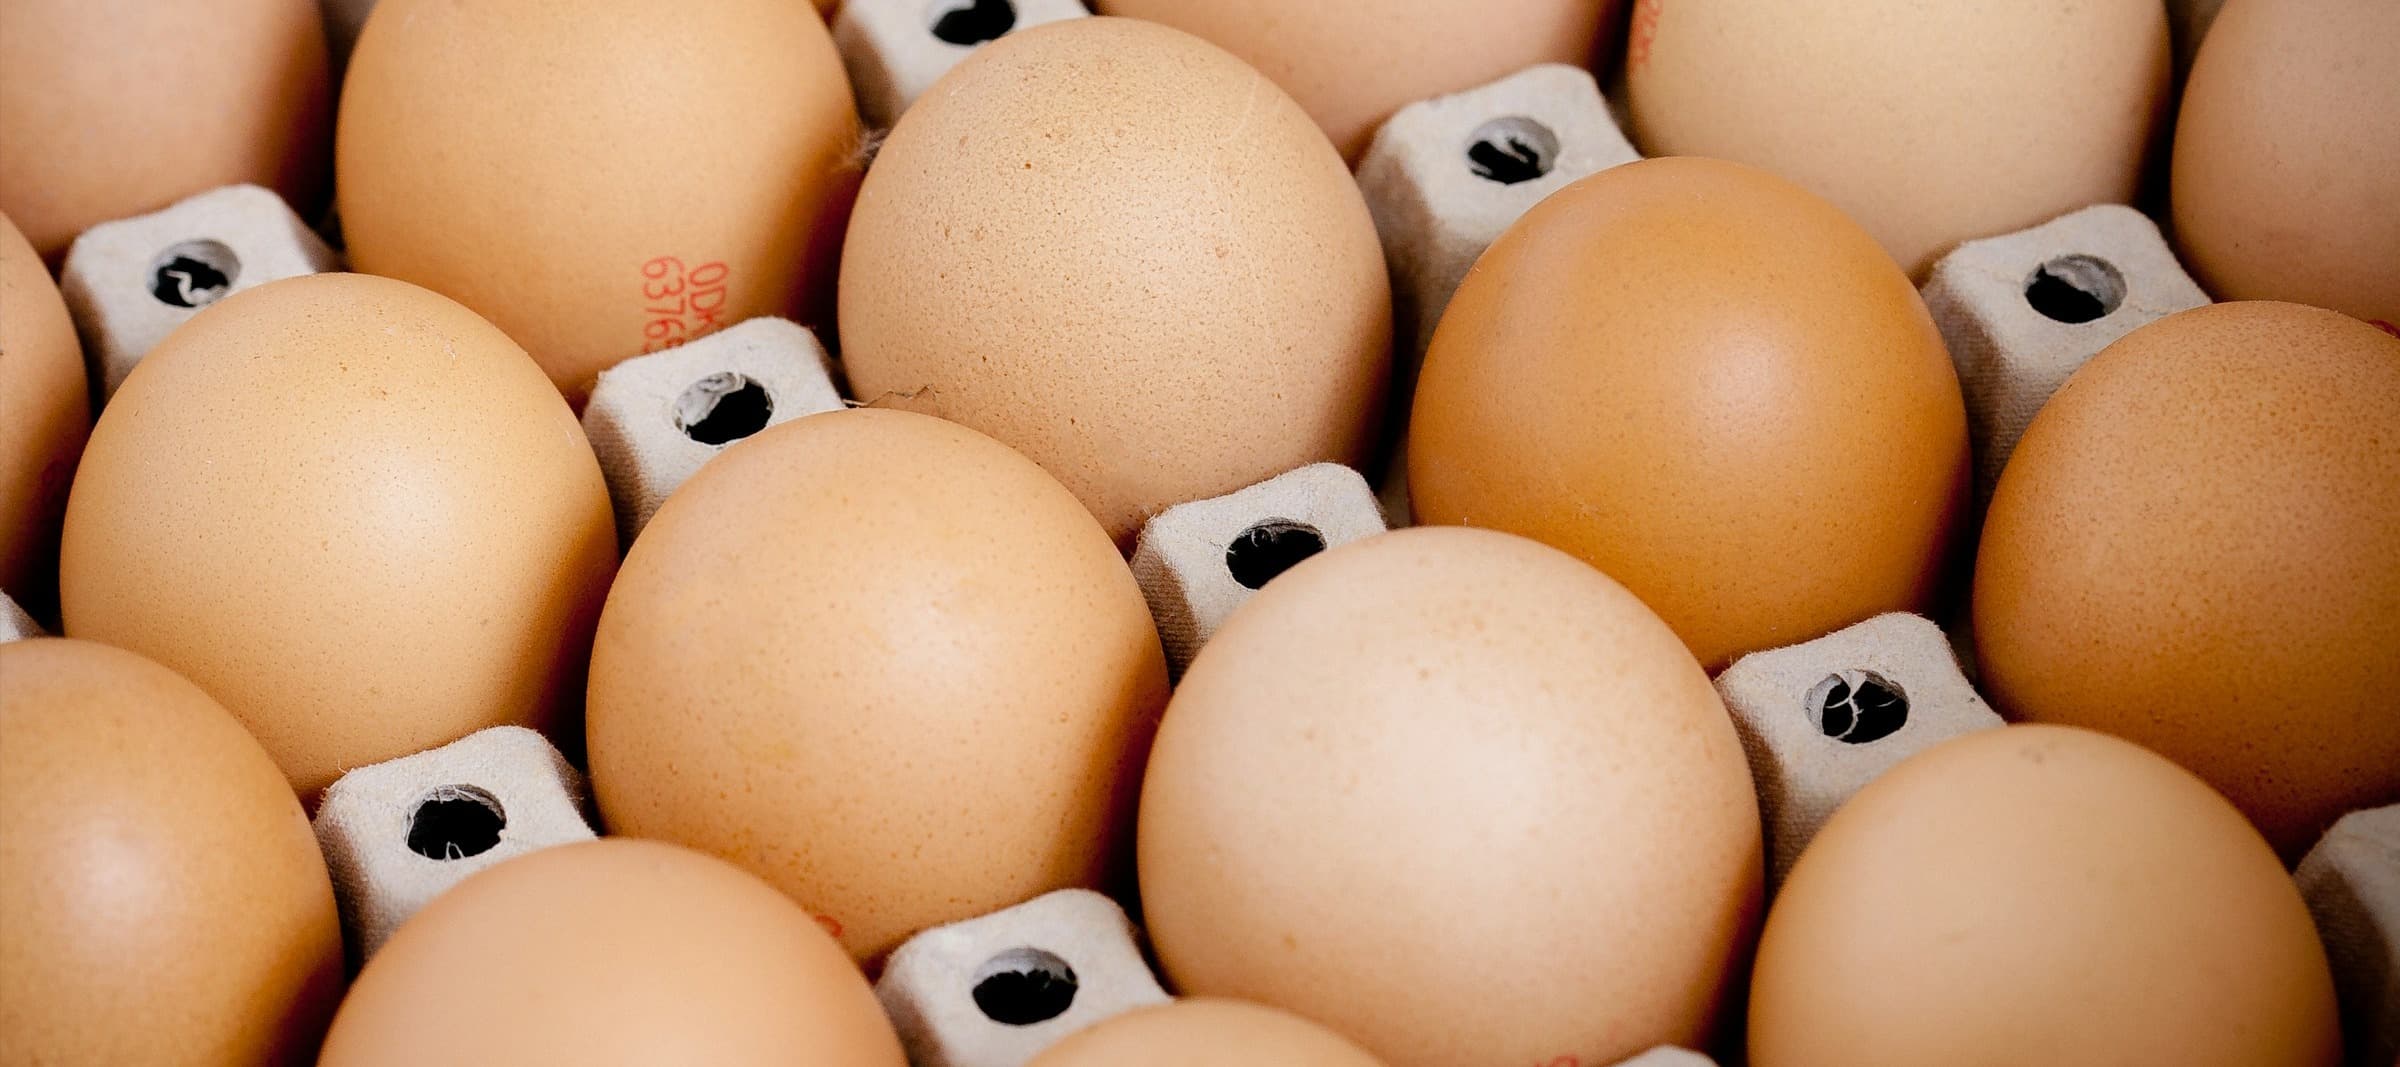 Фото новости: "Федеральная антимонопольная служба начала проверку торговых сетей из-за цен на яйца"